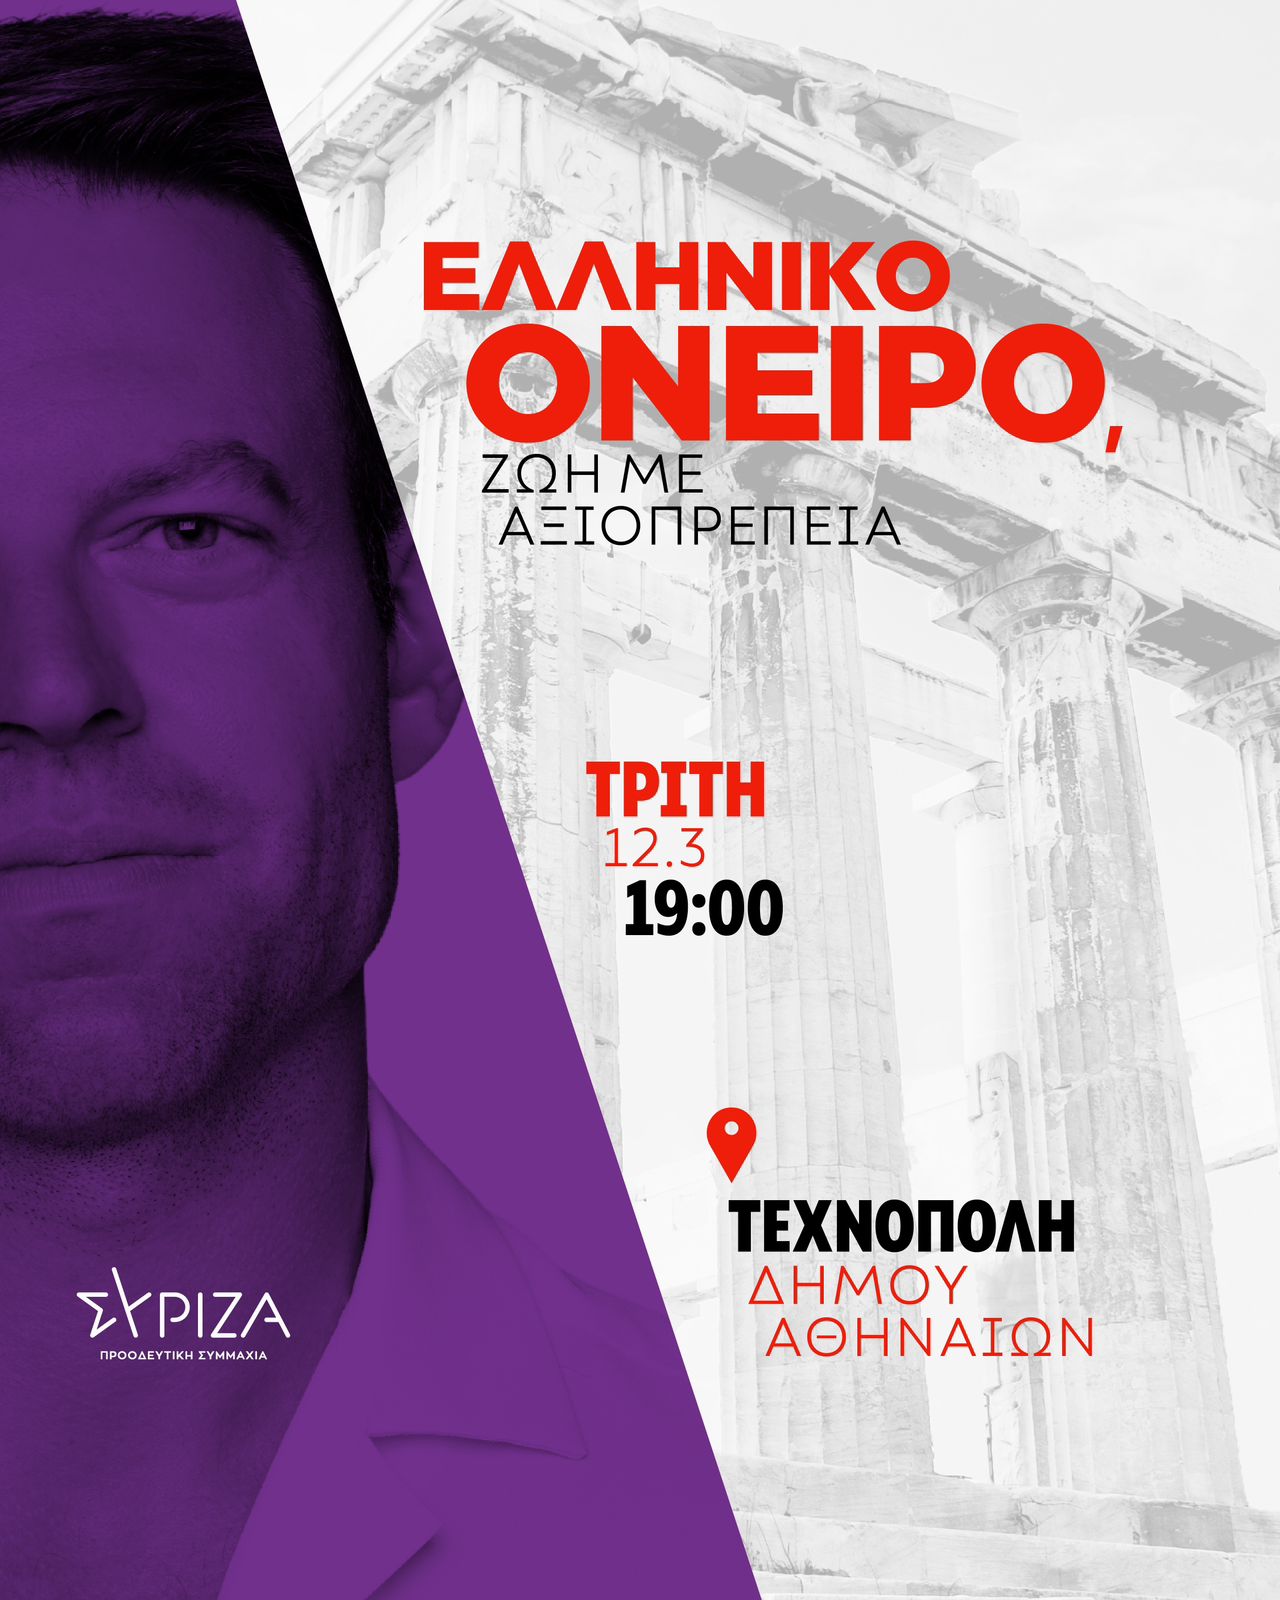 Ομιλία του προέδρου του ΣΥΡΙΖΑ-Προοδευτική Συμμαχία, Στέφανου Κασσελάκη, στην εκδήλωση: “Ελληνικό όνειρο- Ζωή με αξιοπρέπεια”